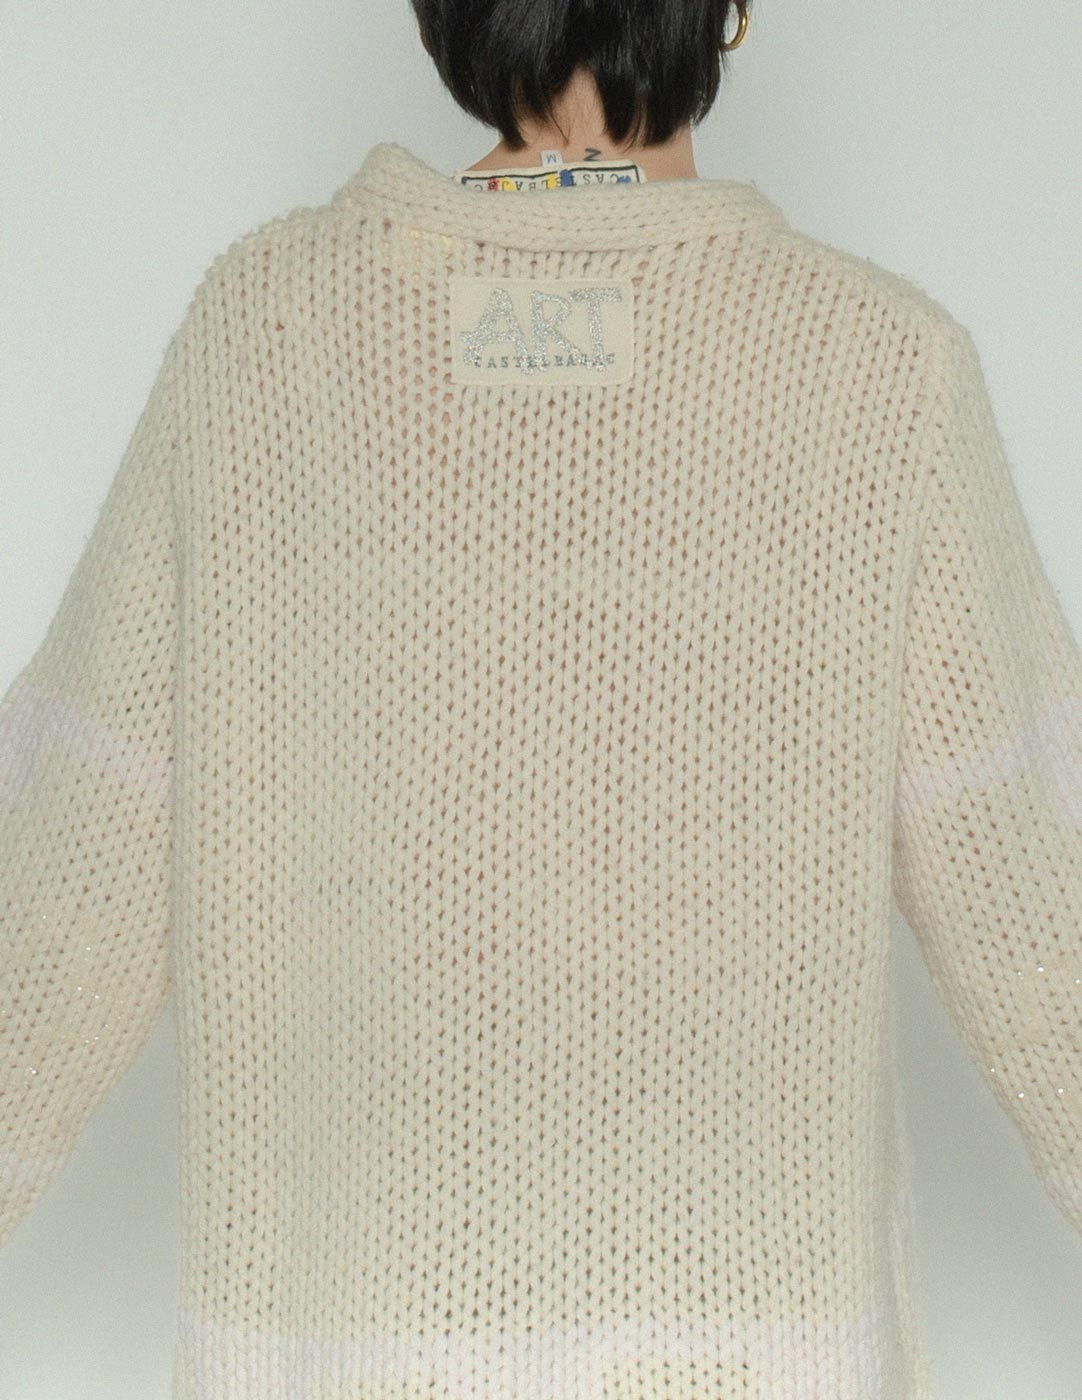 JC de Castelbajac vintage chunky wool sweater back detail